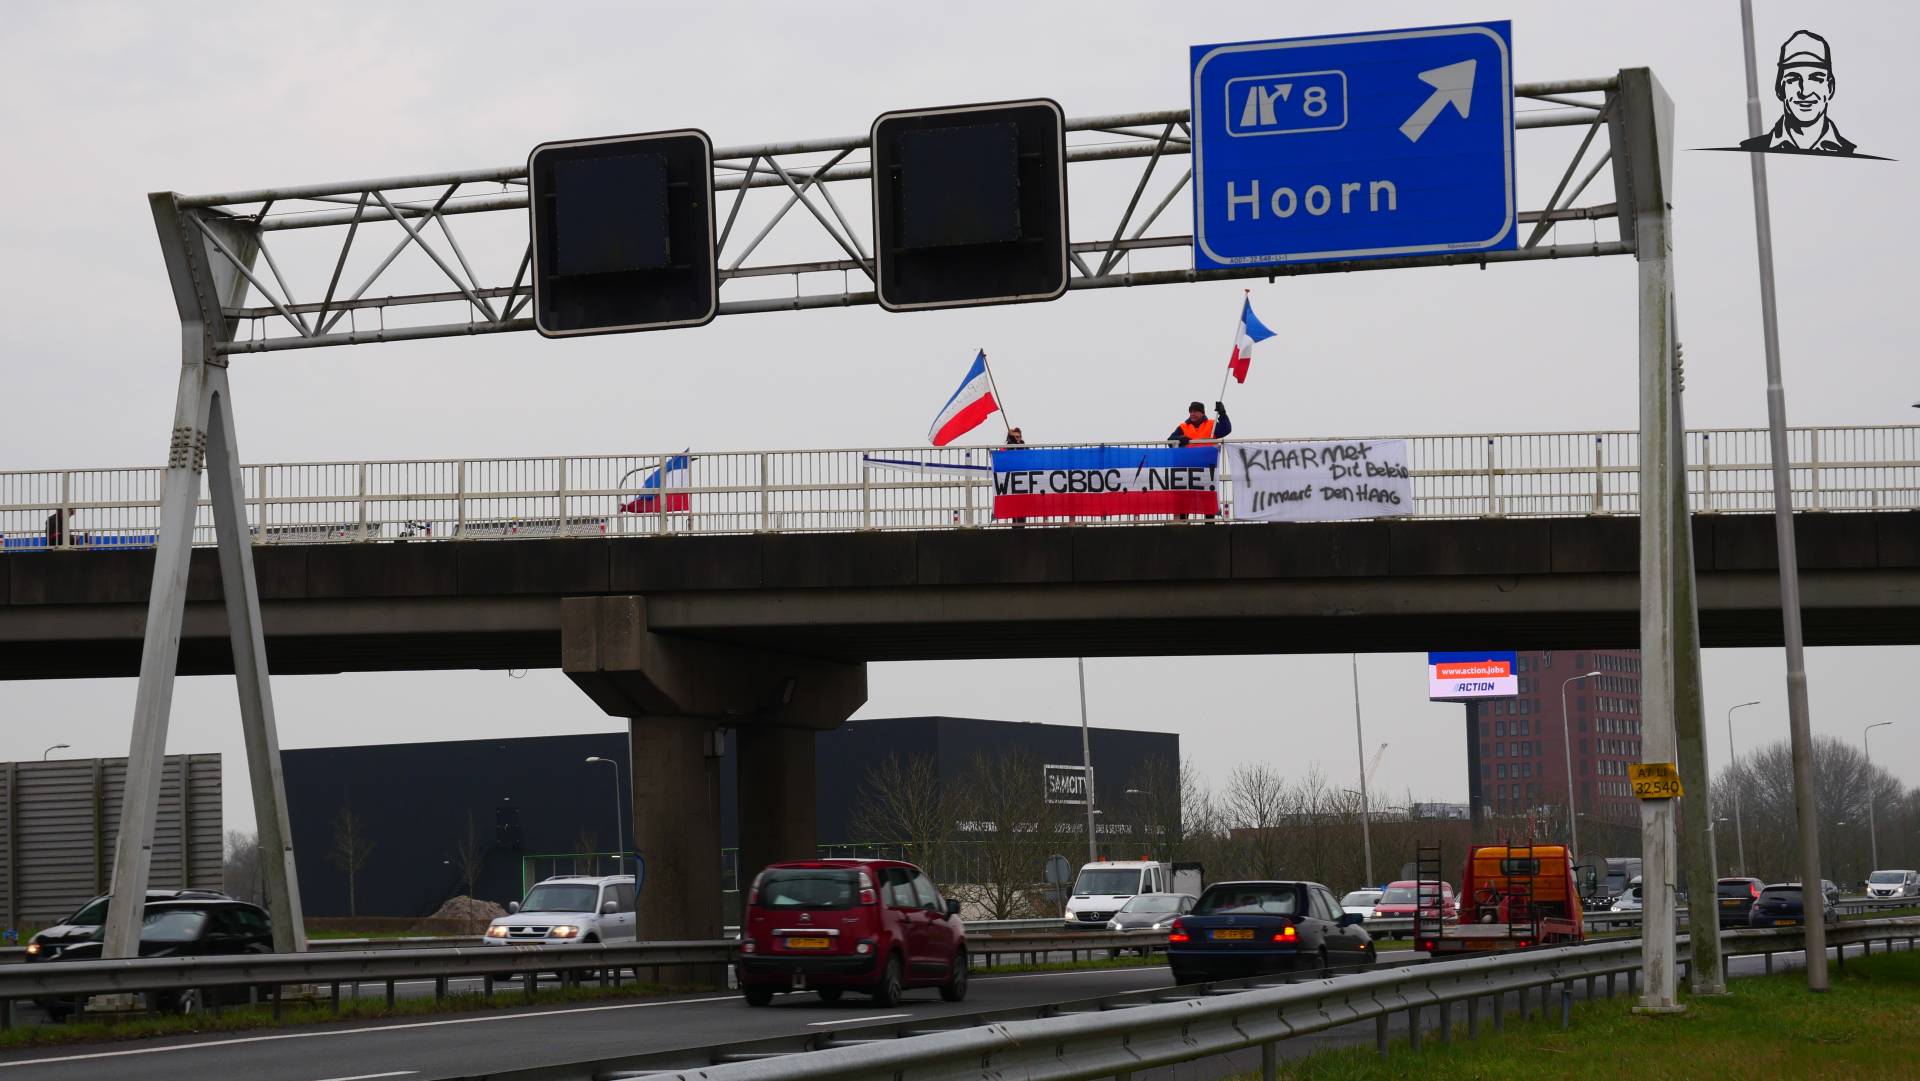 Dagelijks demonstreren bij viaduct Hoorn van Grasbaal